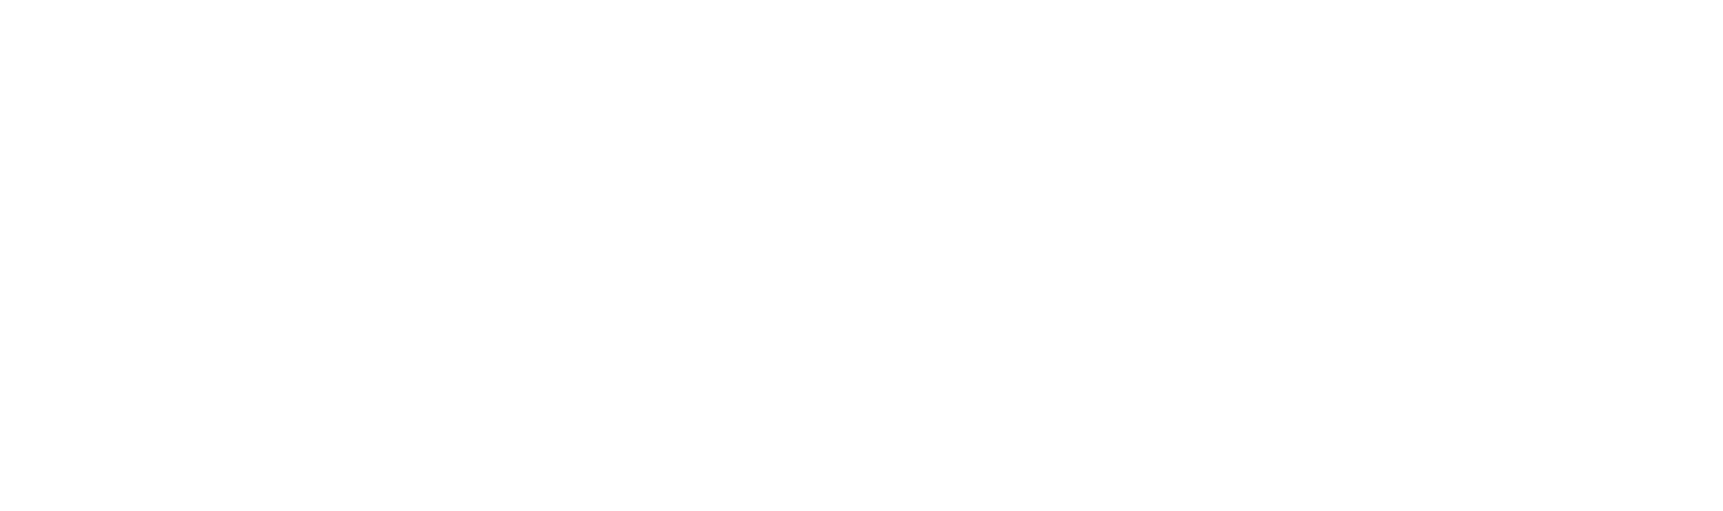 talKIT - Das Technologieforum